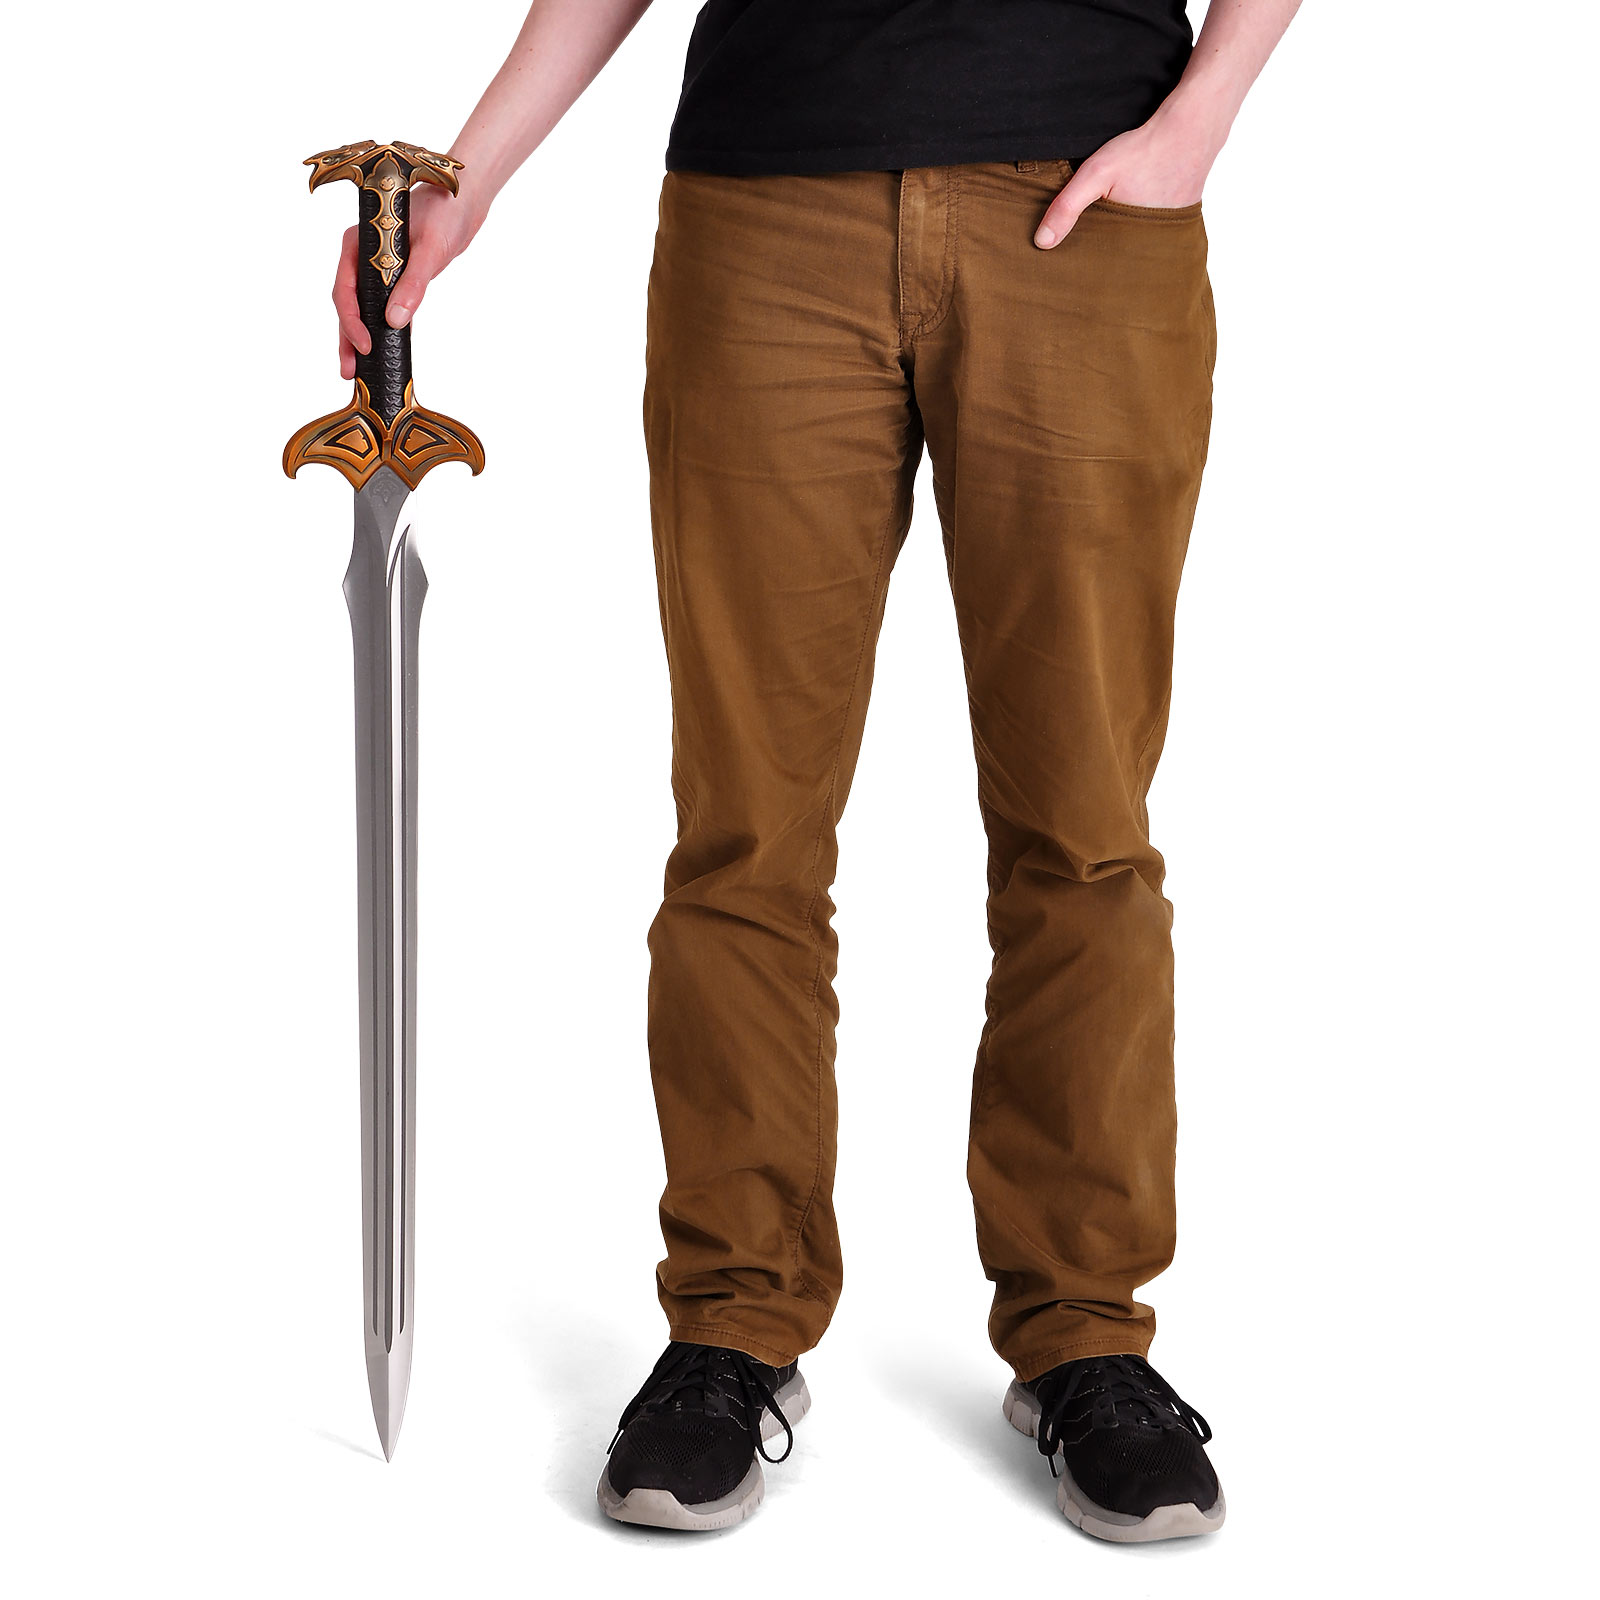 The Hobbit - Bard's Sword